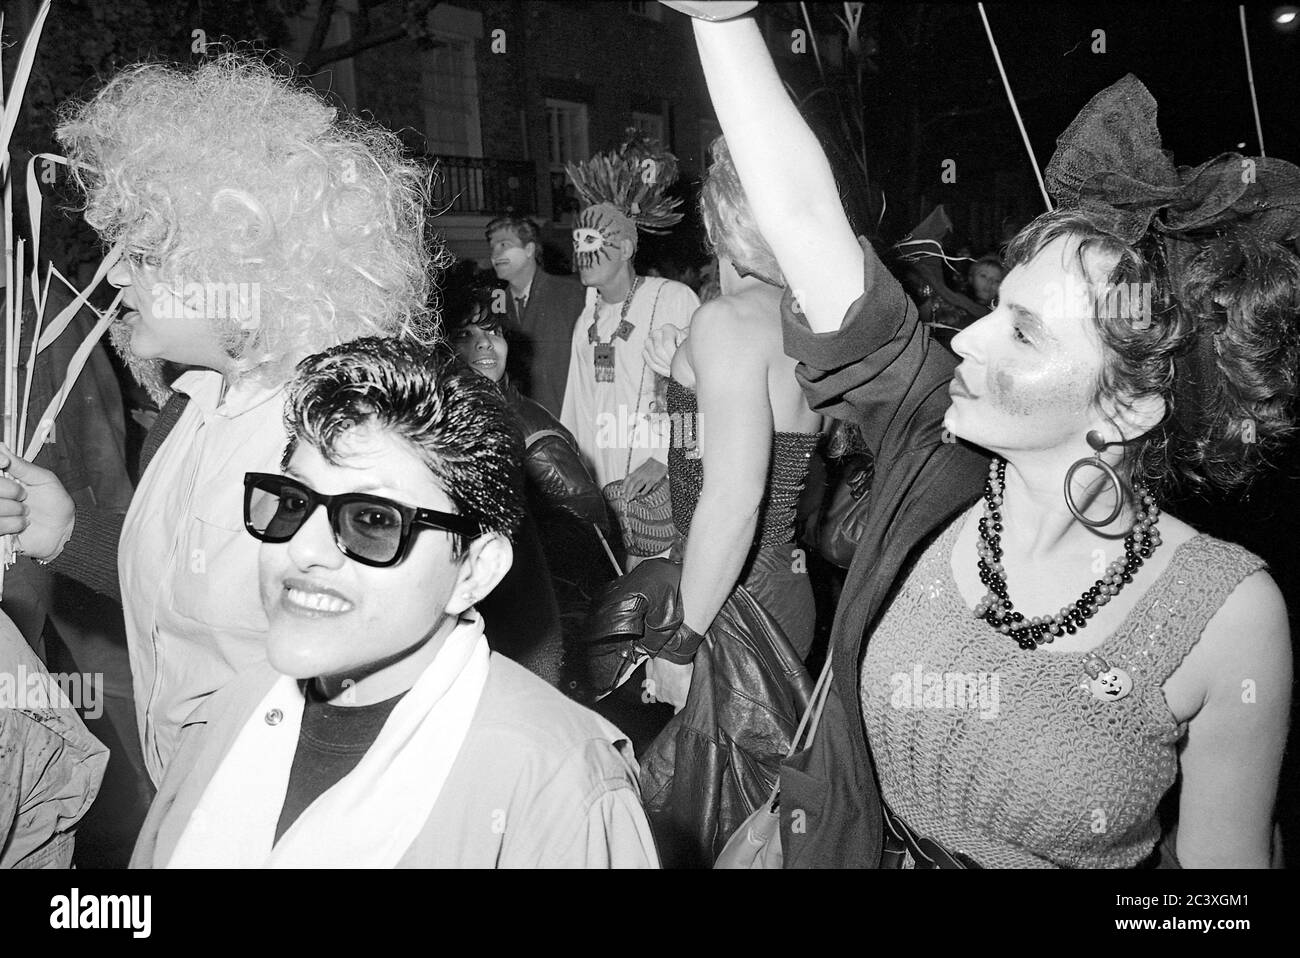 Partecipanti alla Greenwich Village Halloween Parade, New York City, USA negli anni '80 fotografati con film in bianco e nero di notte. Foto Stock